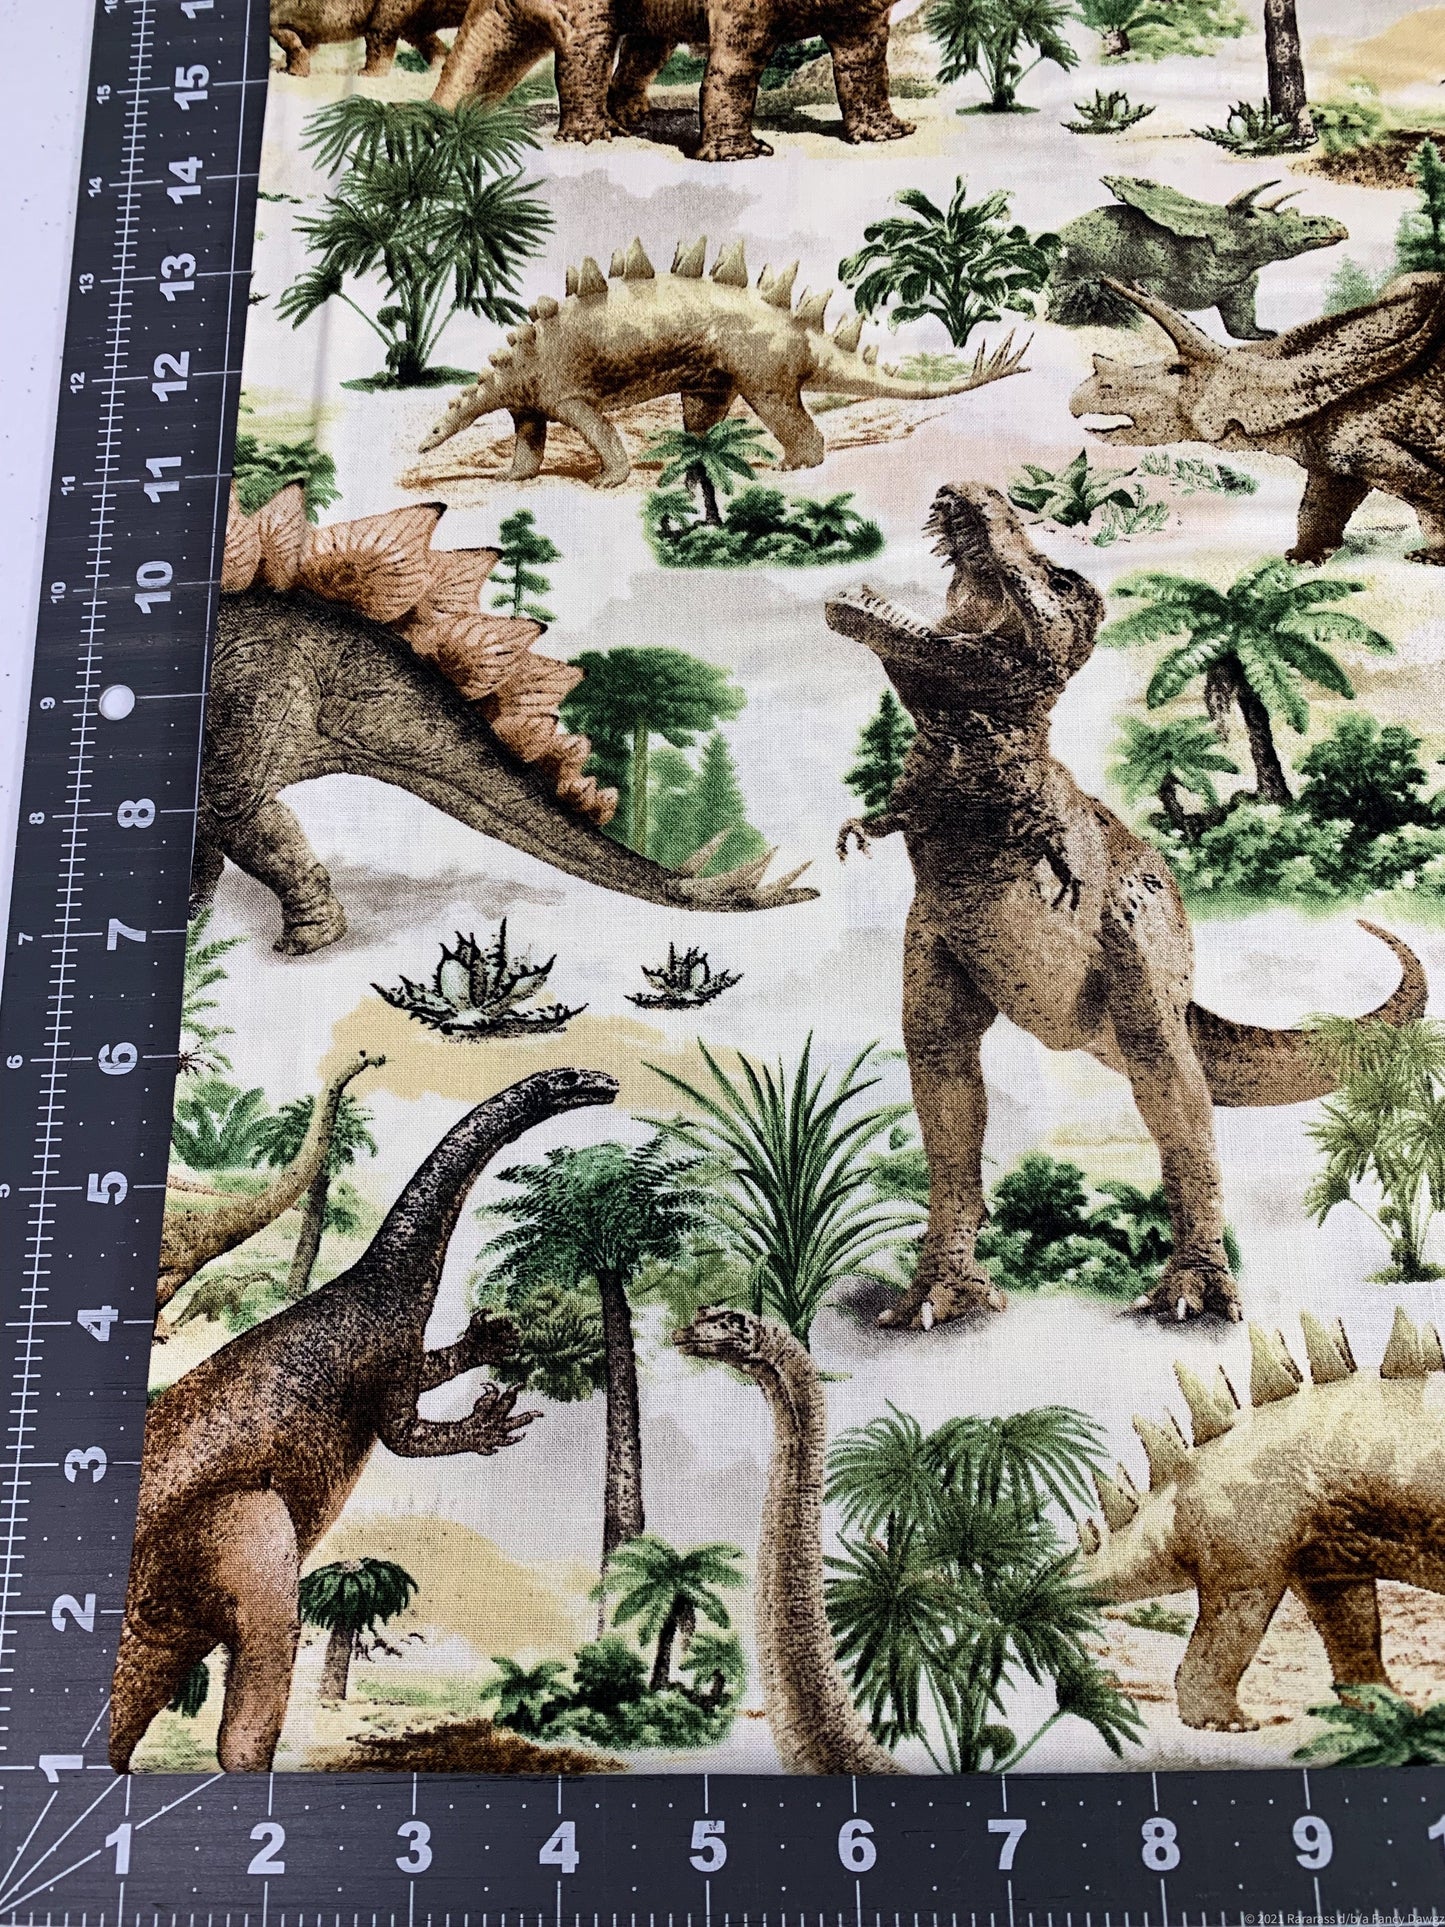 T Rex Dinosaur fabric C7816 Allover Dinosaurs